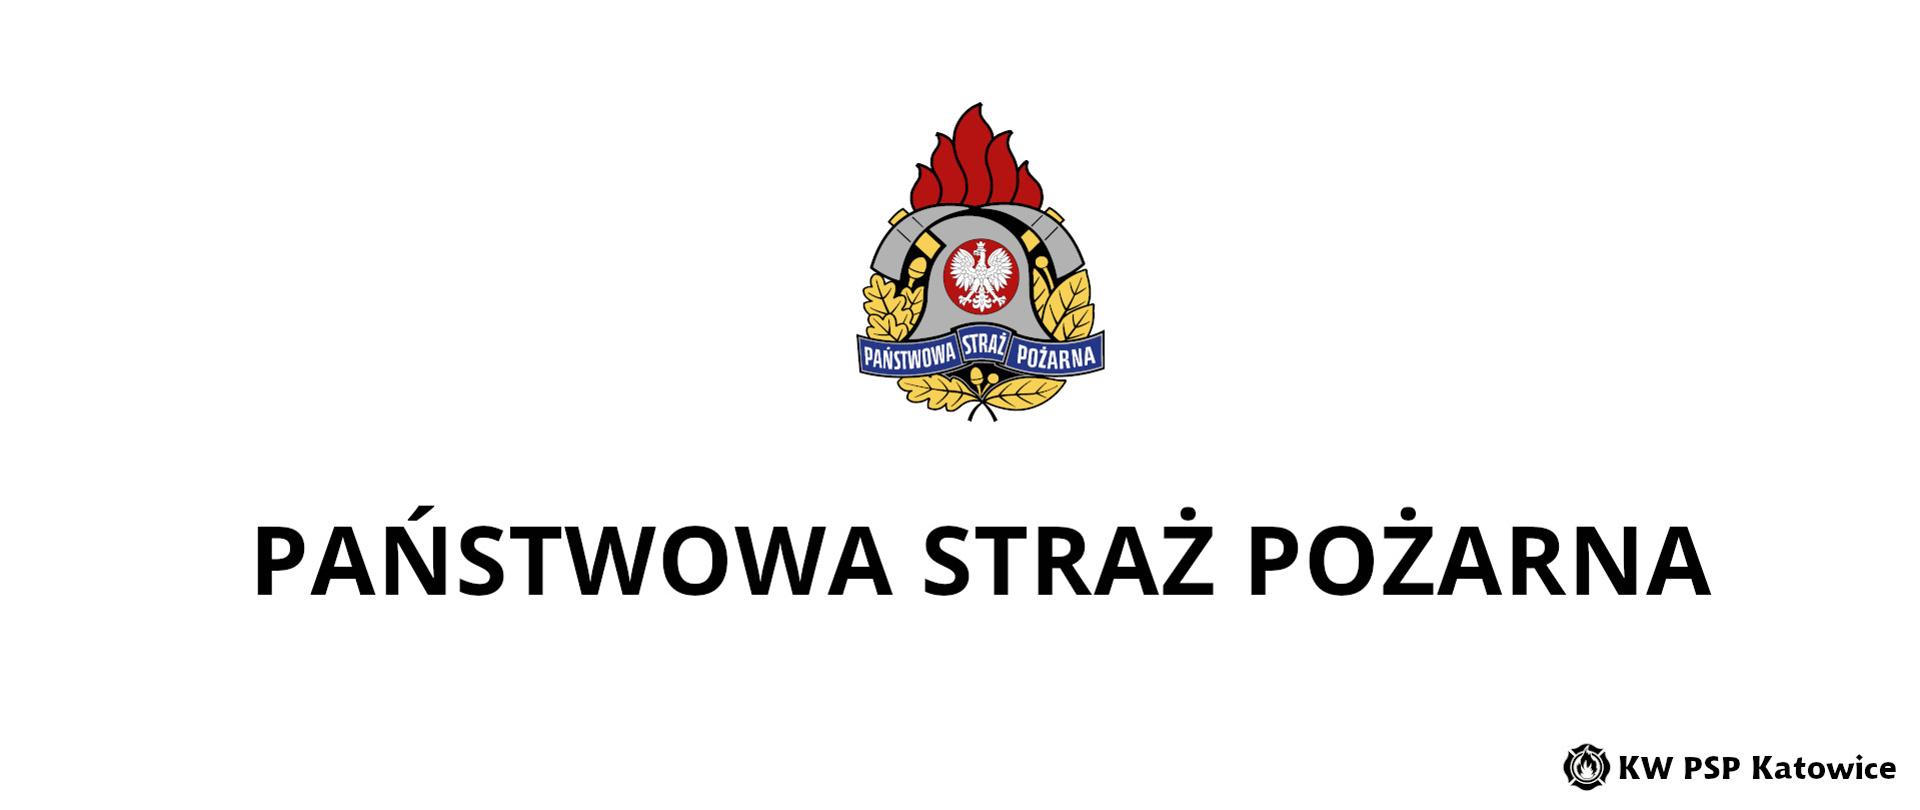 Ilustracja przedstawia na białym tle, na środku kolorowy logotyp Państwowej Straży Pożarnej. Poniżej napis Państwowa Straż Pożarna. W prawym dolnym rogu napis KW PSP Katowice